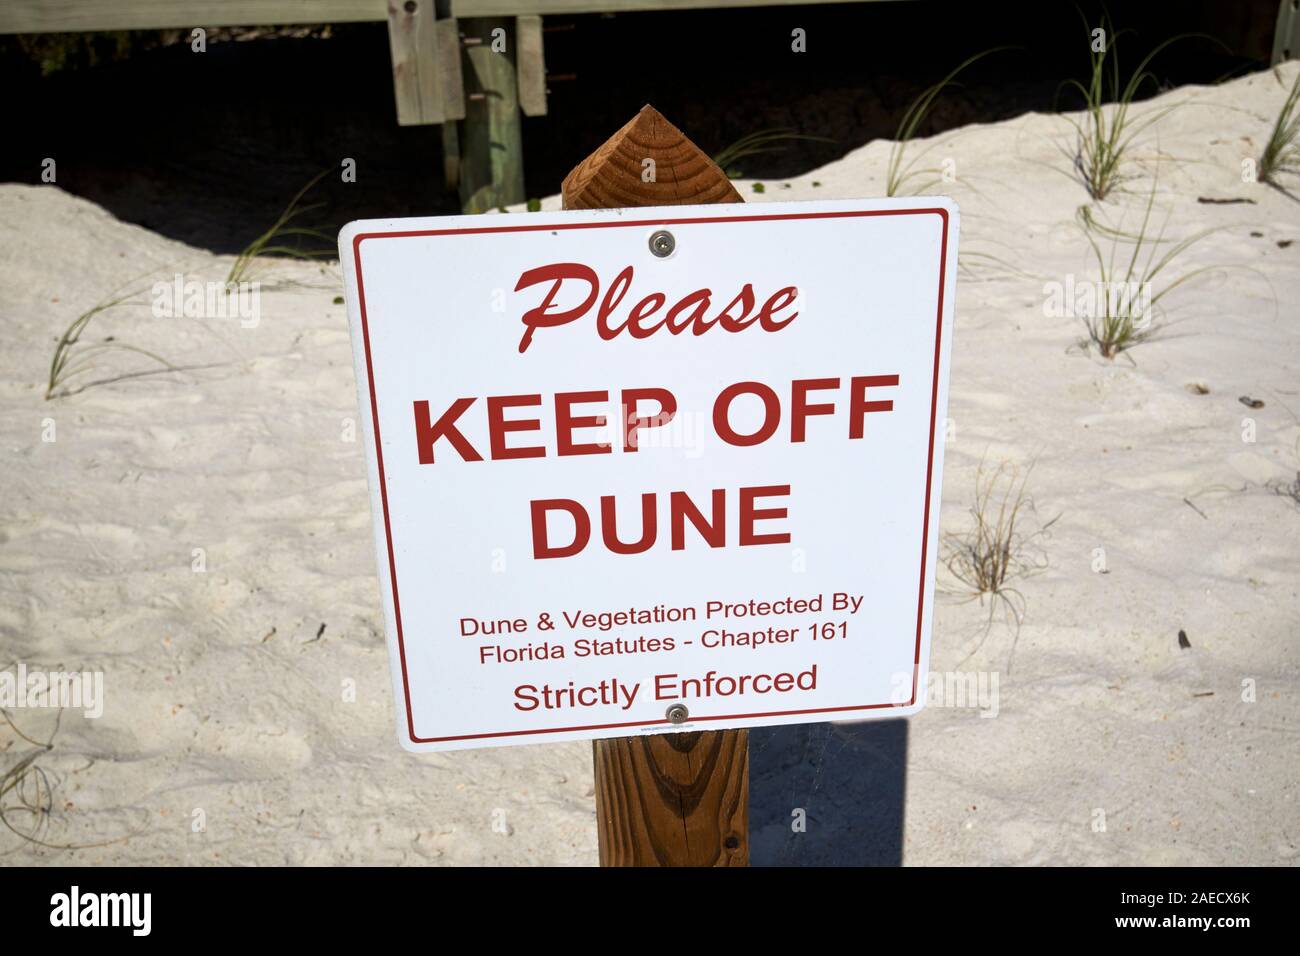 Veuillez conserver de la dune inscription sur les aires protégées et la végétation des dunes marineland florida usa Banque D'Images